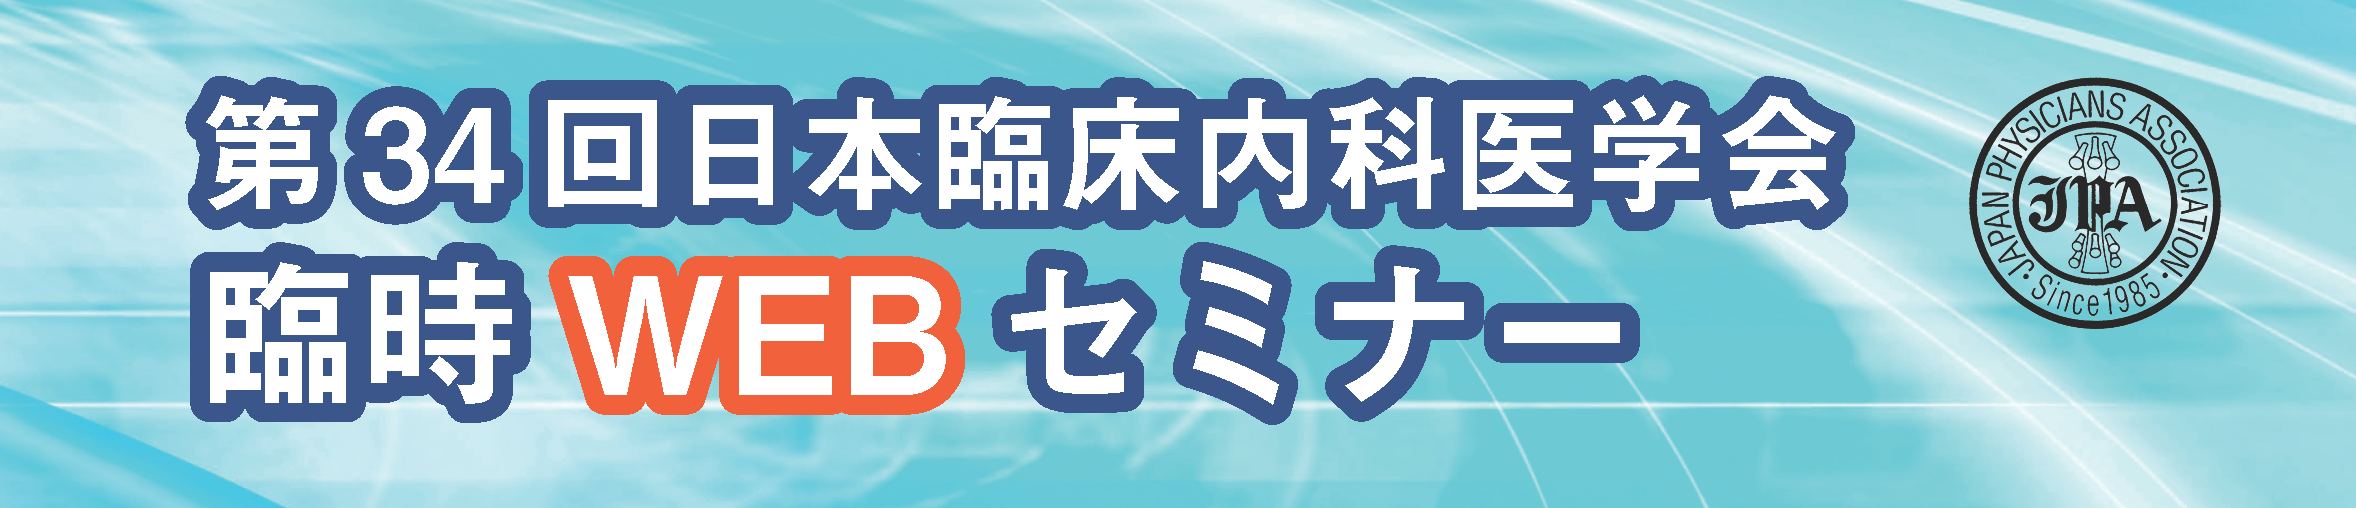 japha34th-web-banner.png